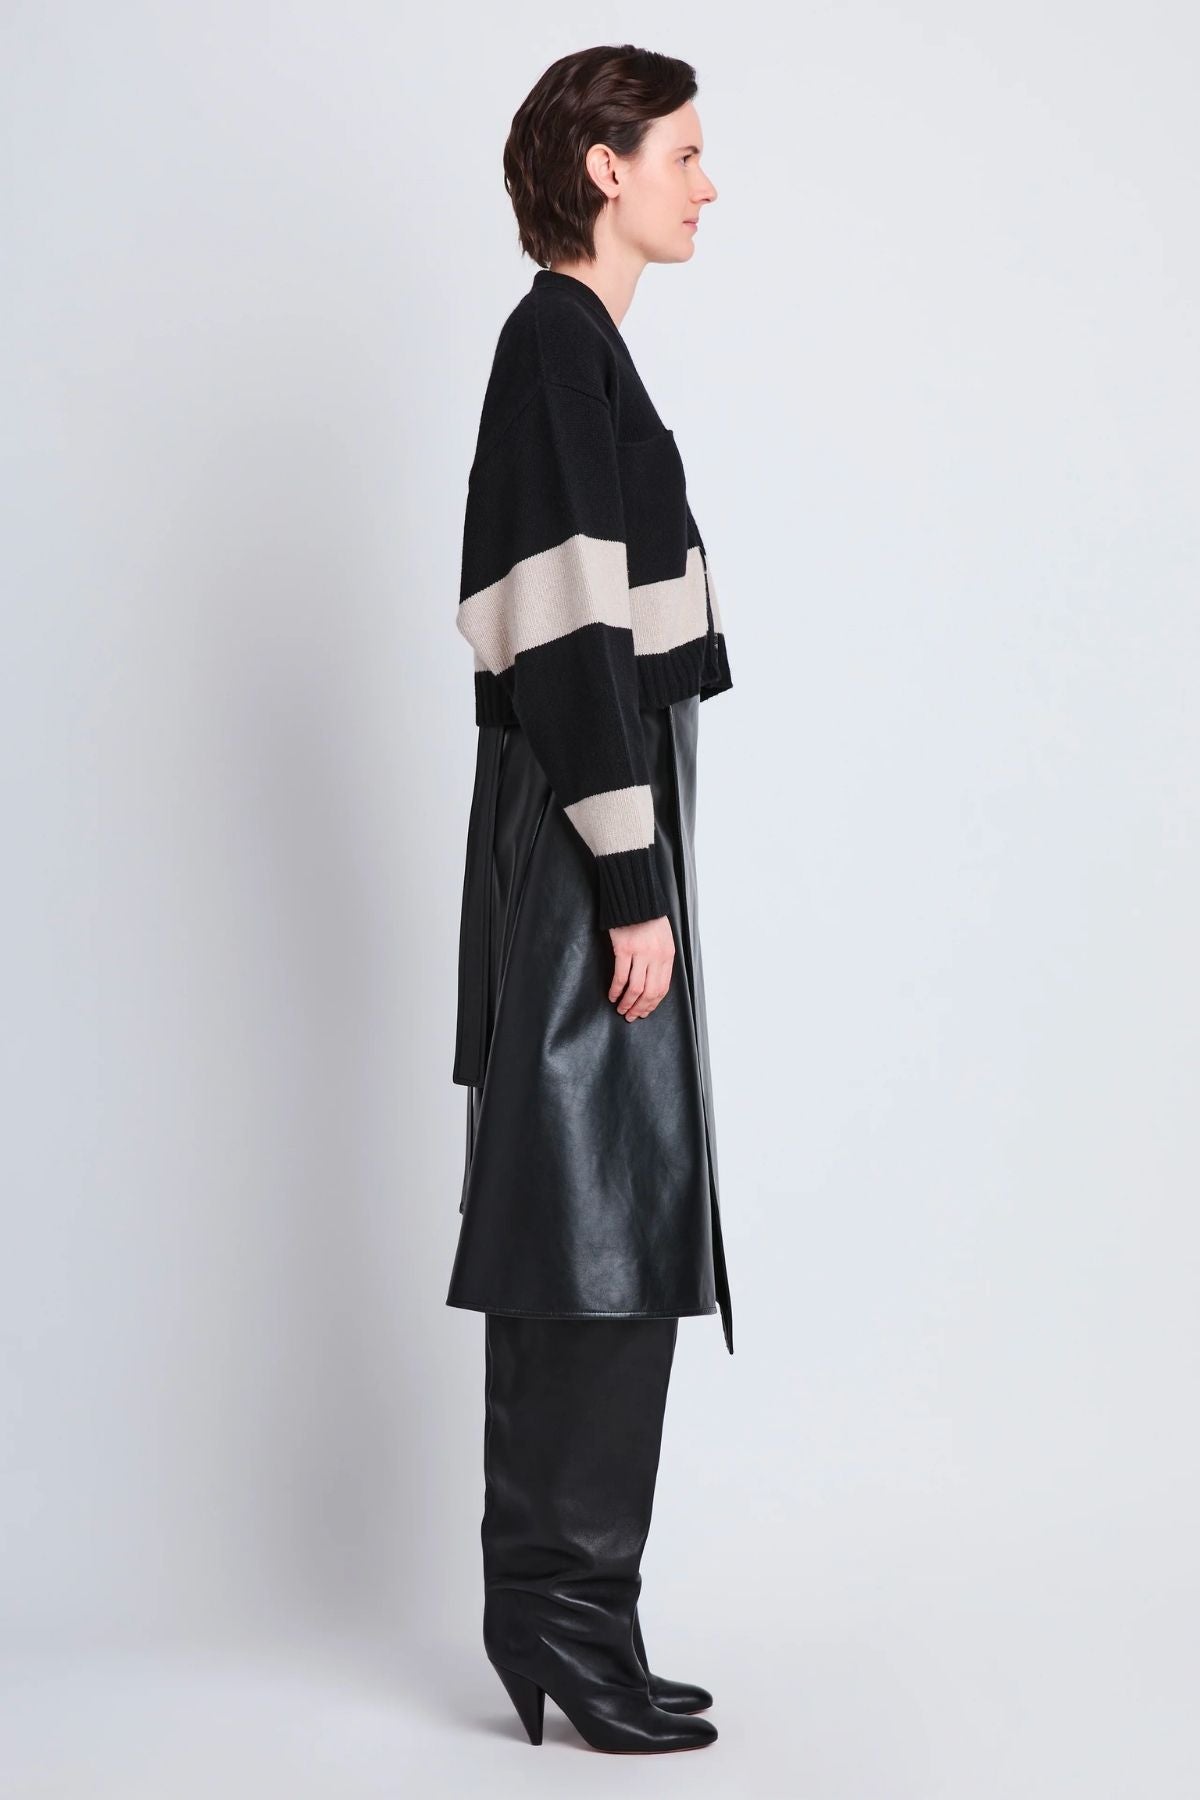 Proenza Schouler Sofia Striped Cashmere Cardigan - Black Multi